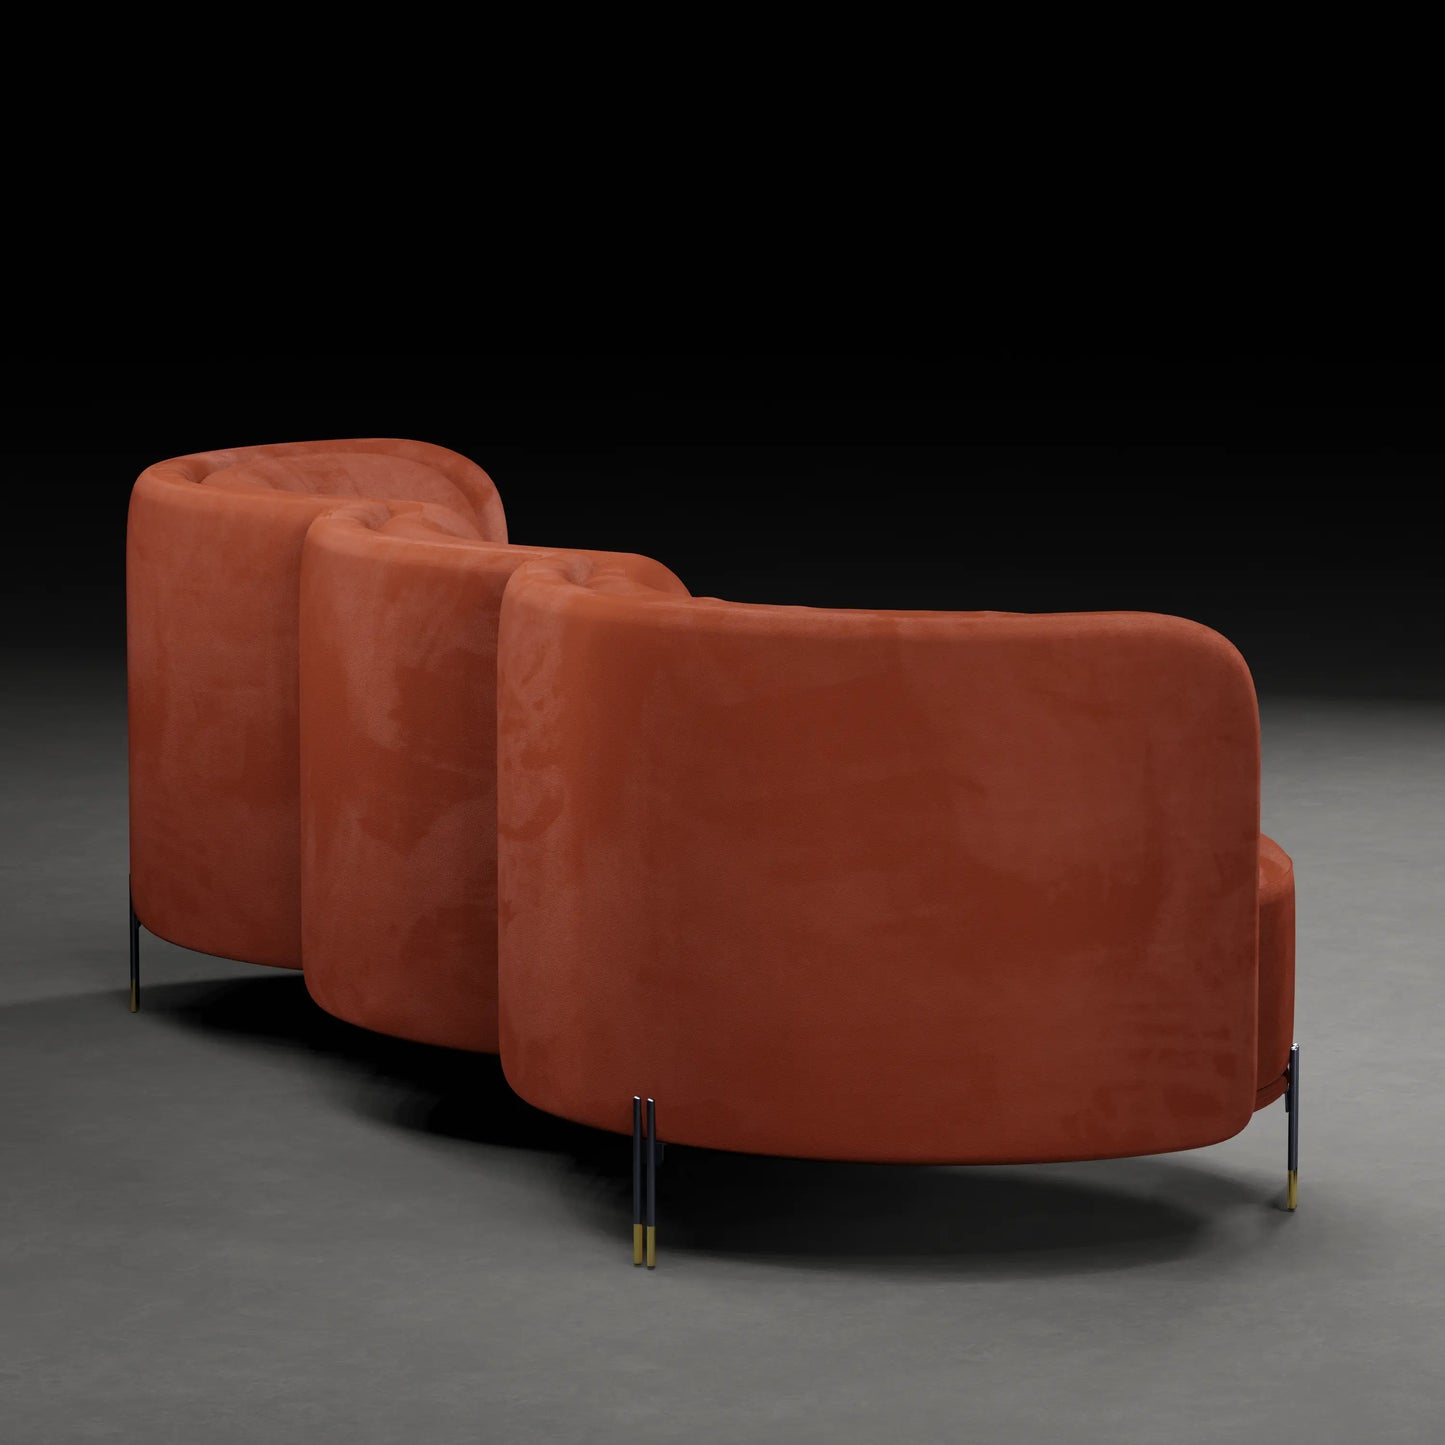 LOTUS - 3 Seater Premium Sofa in Velvet Finish | Orange Colour